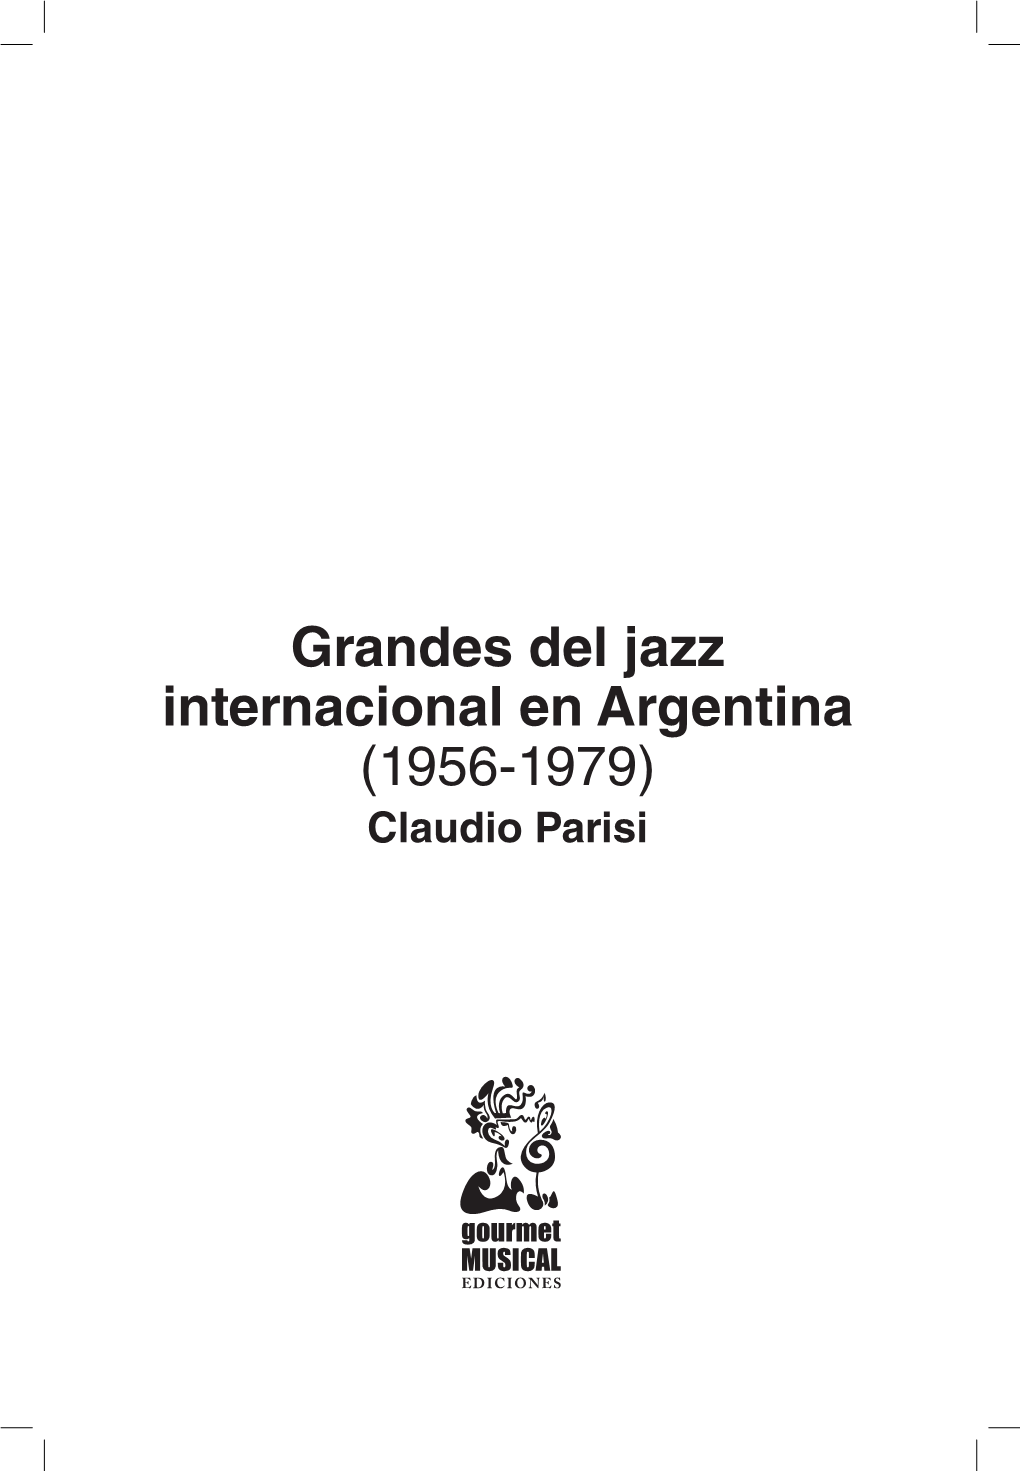 Grandes Del Jazz Internacional En Argentina (1956-1979) Claudio Parisi Parisi, Claudio Grandes Del Jazz Internacional En Argentina (1956-1979) / Claudio Parisi